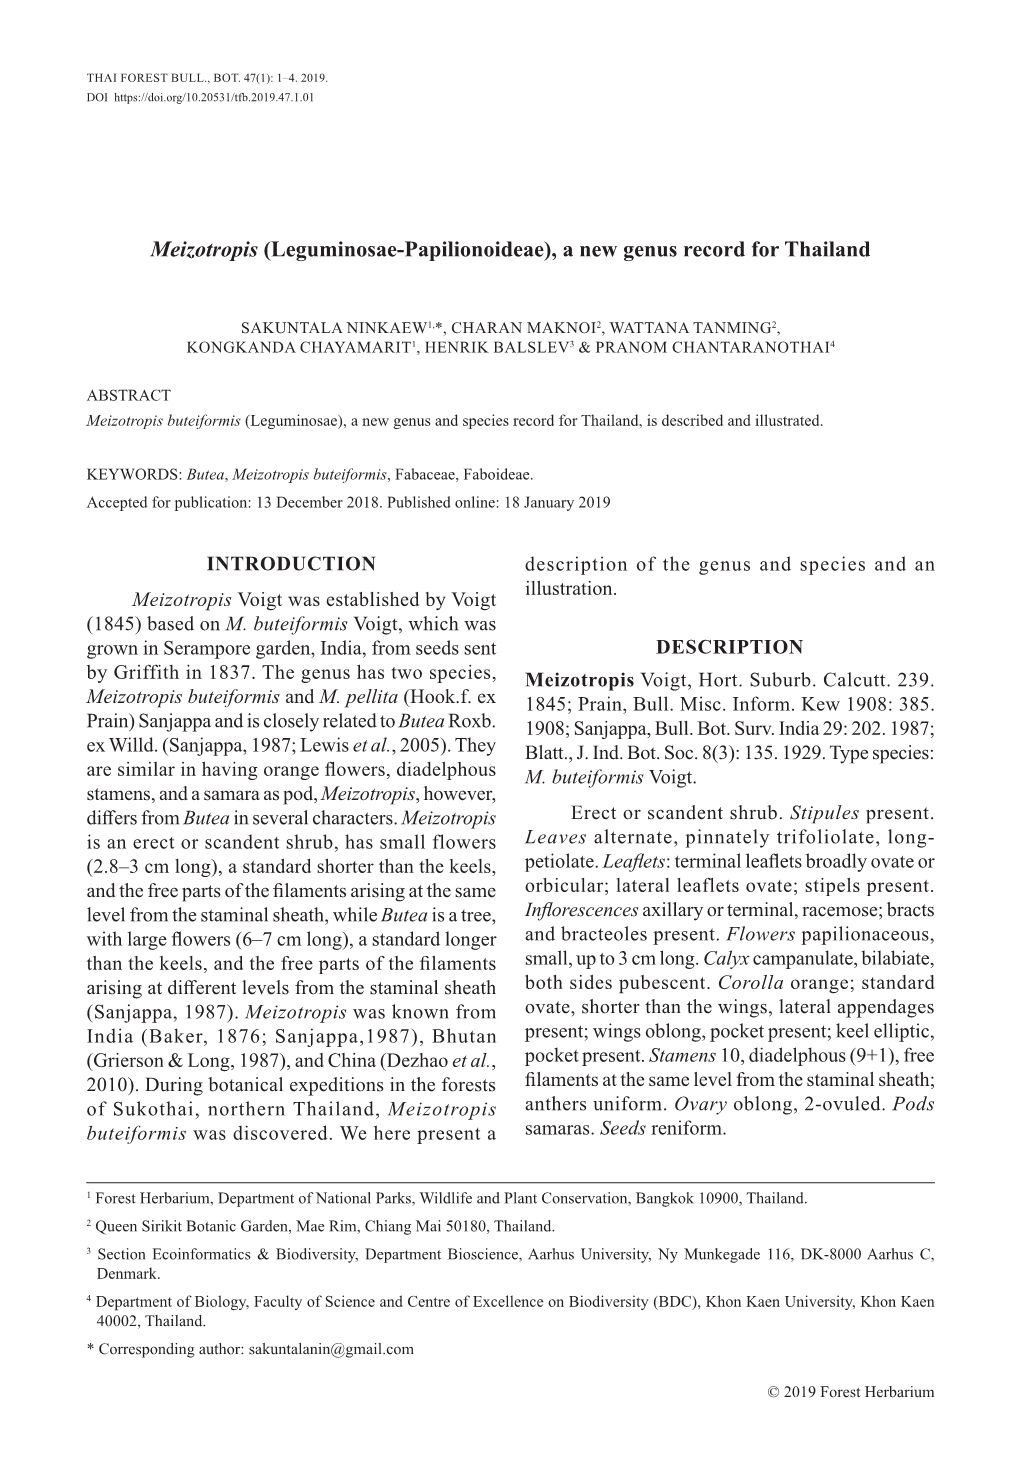 Meizotropis (Leguminosae-Papilionoideae), a New Genus Record for Thailand